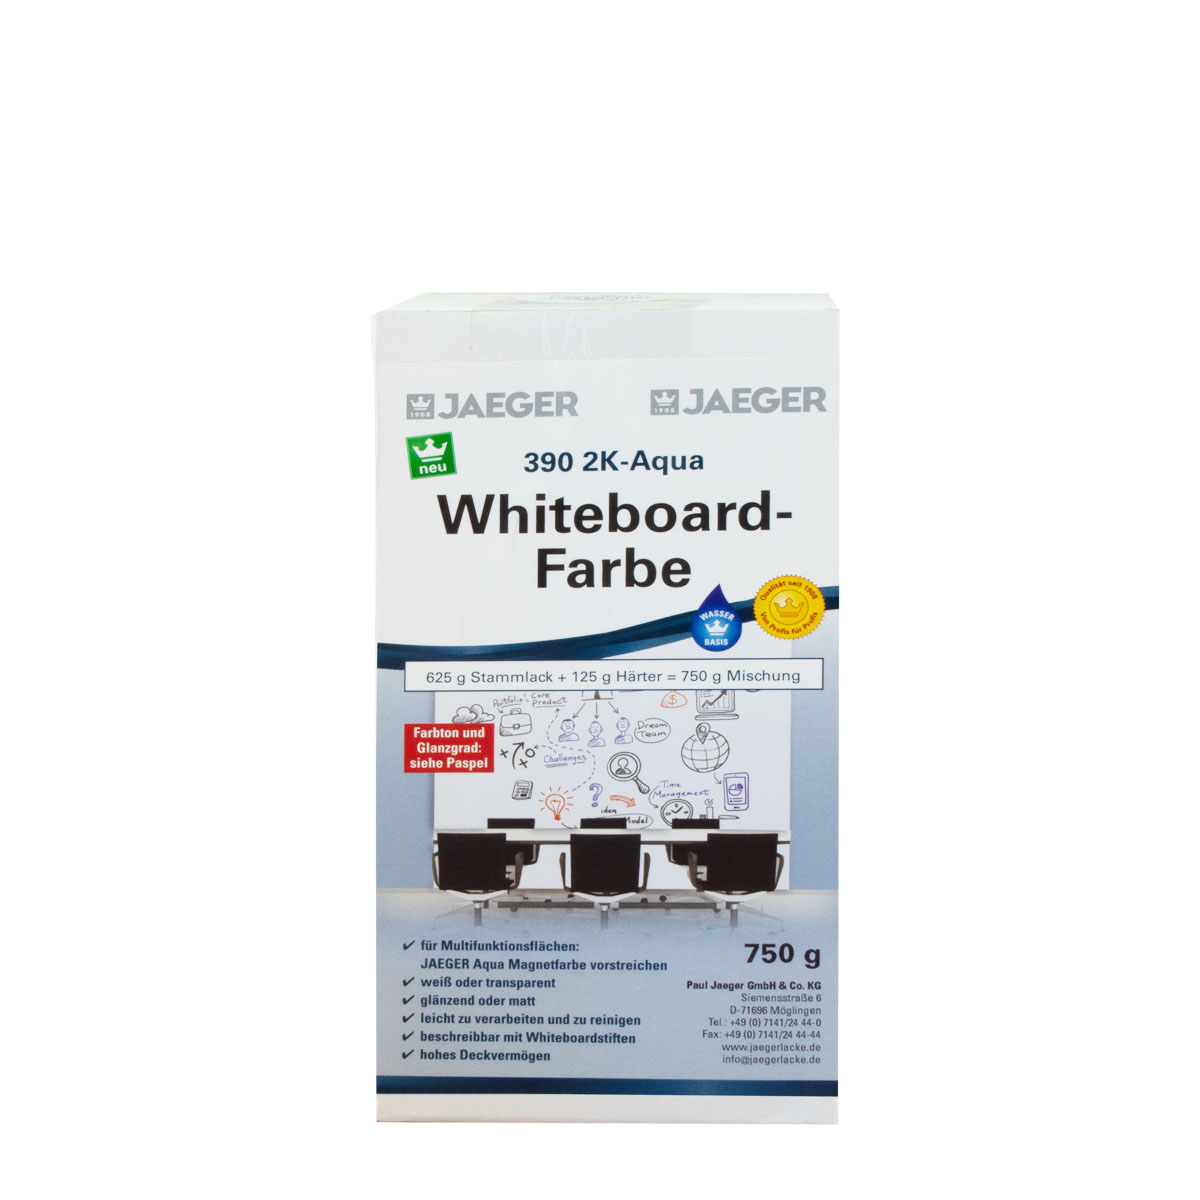 Jaeger 2K-Aqua Whiteboardfarbe Weiss Ral 9016 Seidenglänzend 750g